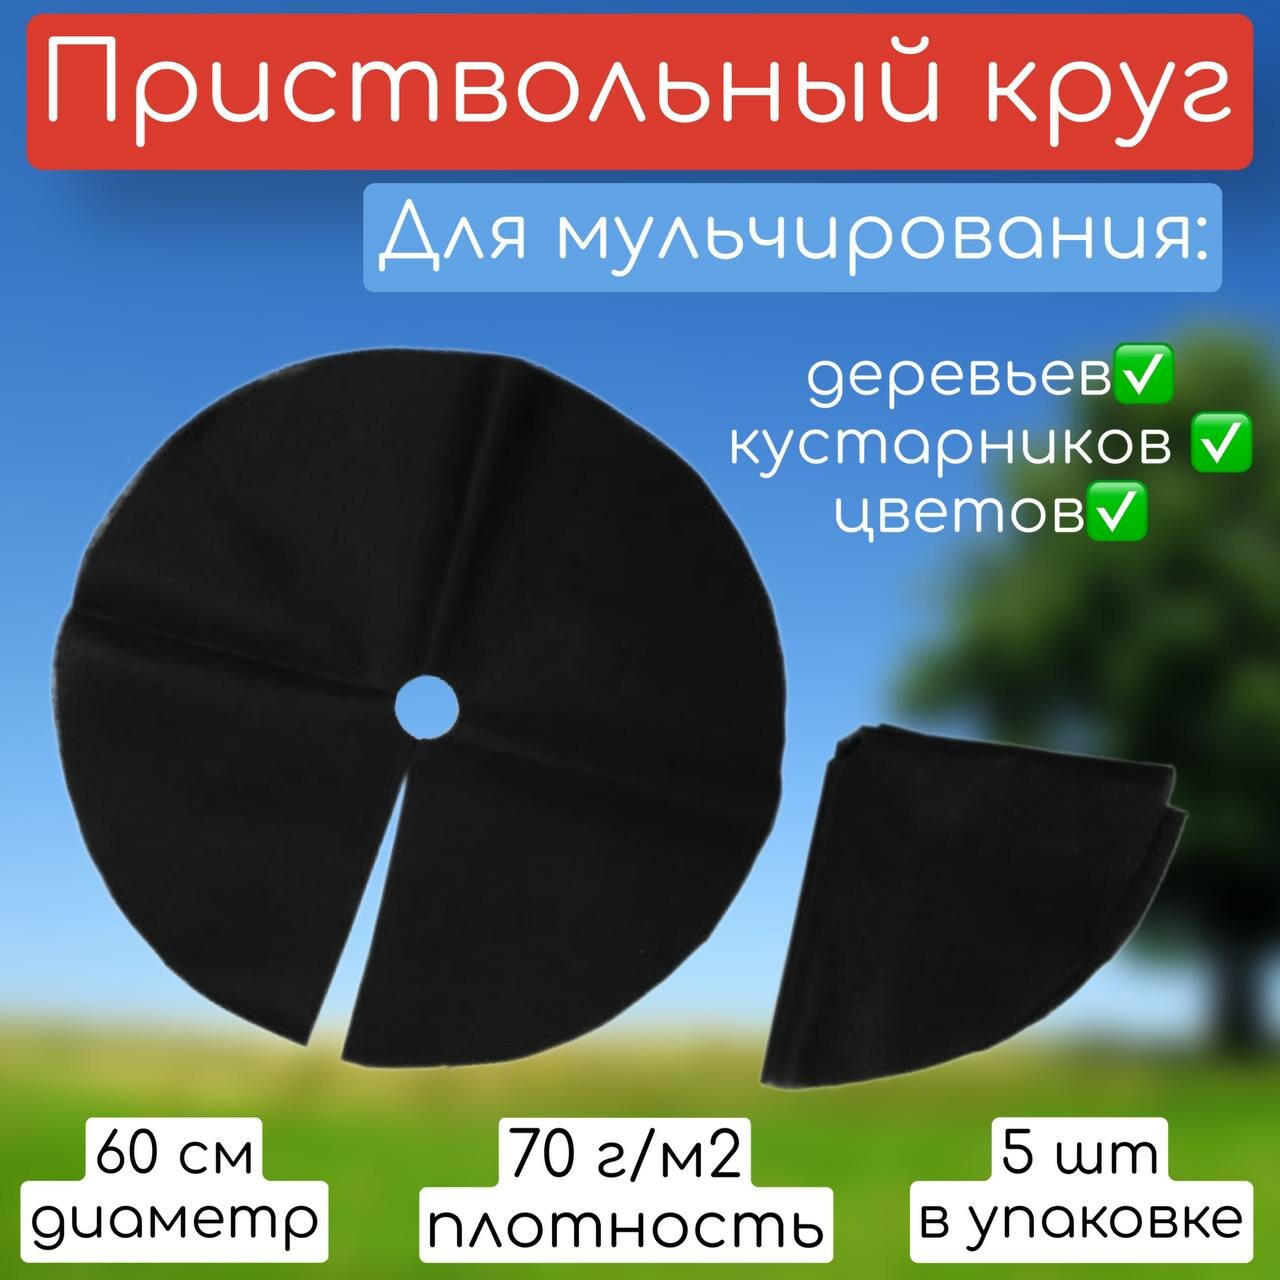 Приствольный круг из спанбонда диаметр 60 см 5 шт/ Укрывной, мульчирующий материал/ Защита стволов кустарников и деревьев